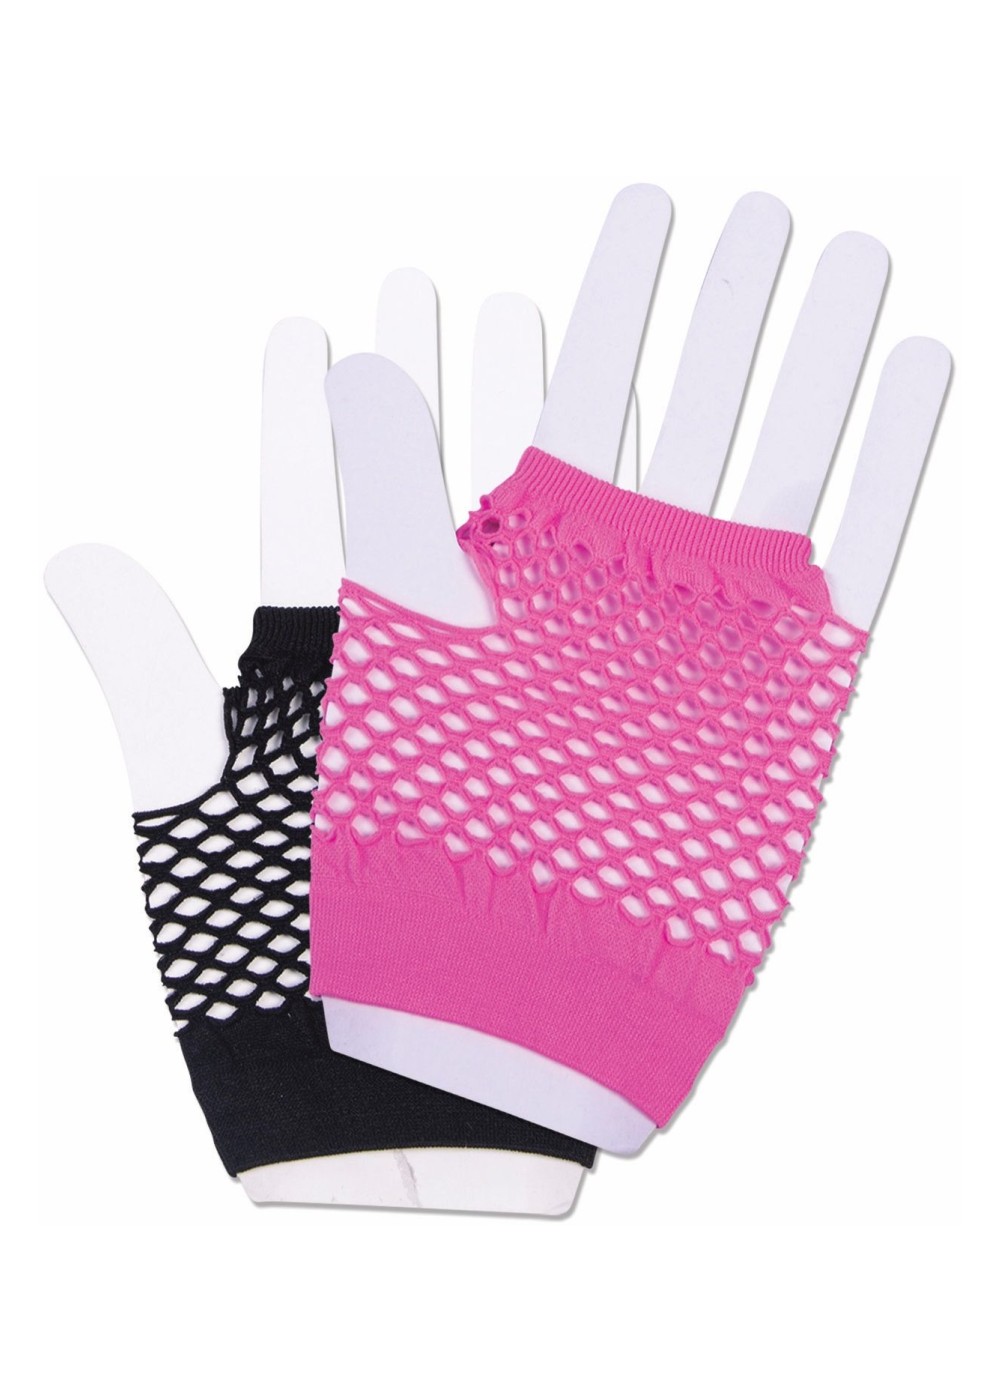 Harlequin Short Fishnet Pink And Black Glove Set